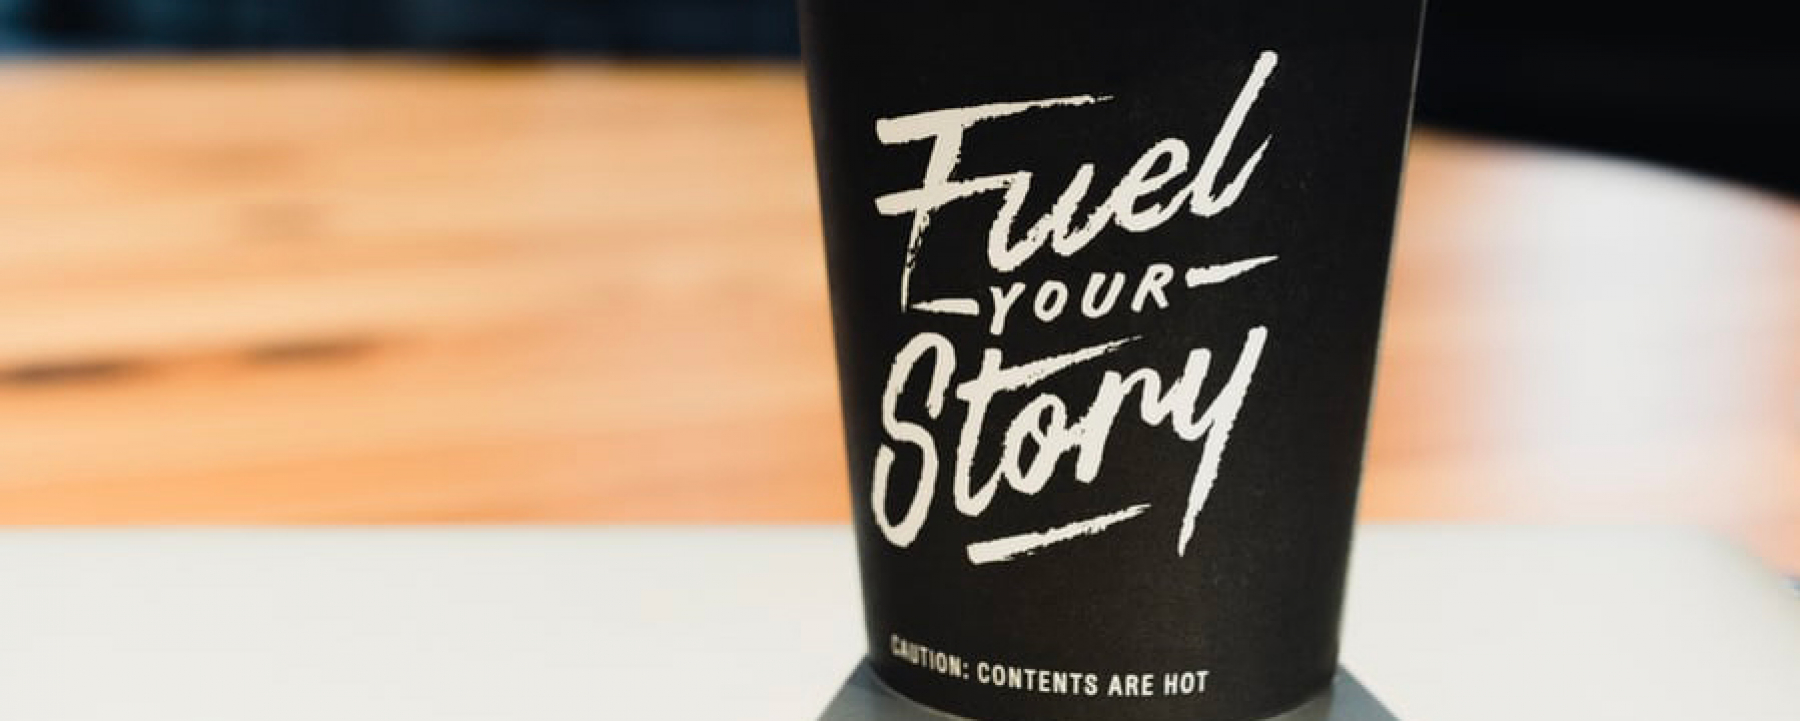 Webinar Maîtrisez l'art du storytelling pour votre business, proposée par Les Foliweb, le 11 septembre 2020 